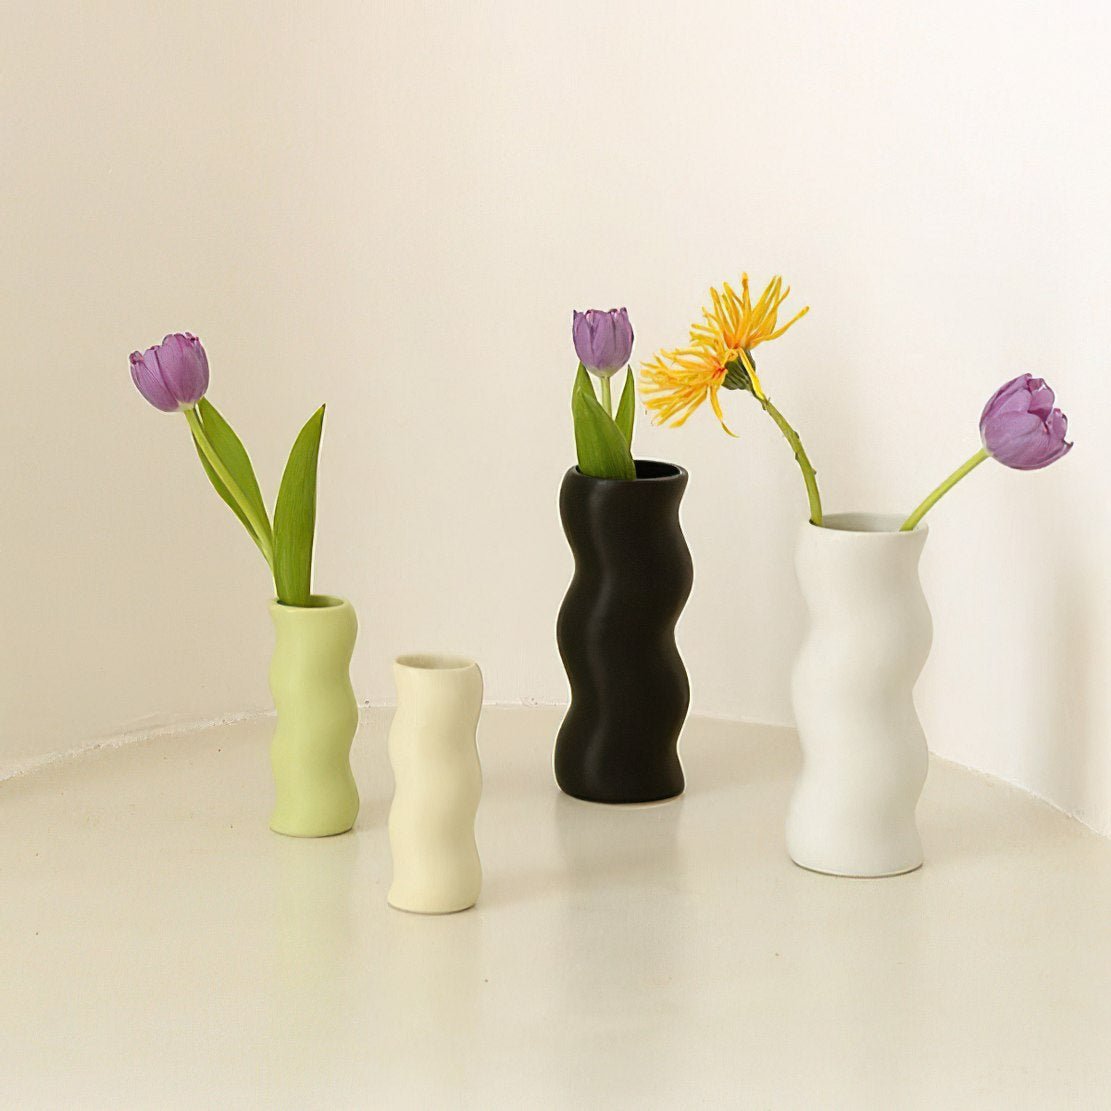 Ceramic cute wiggle vases